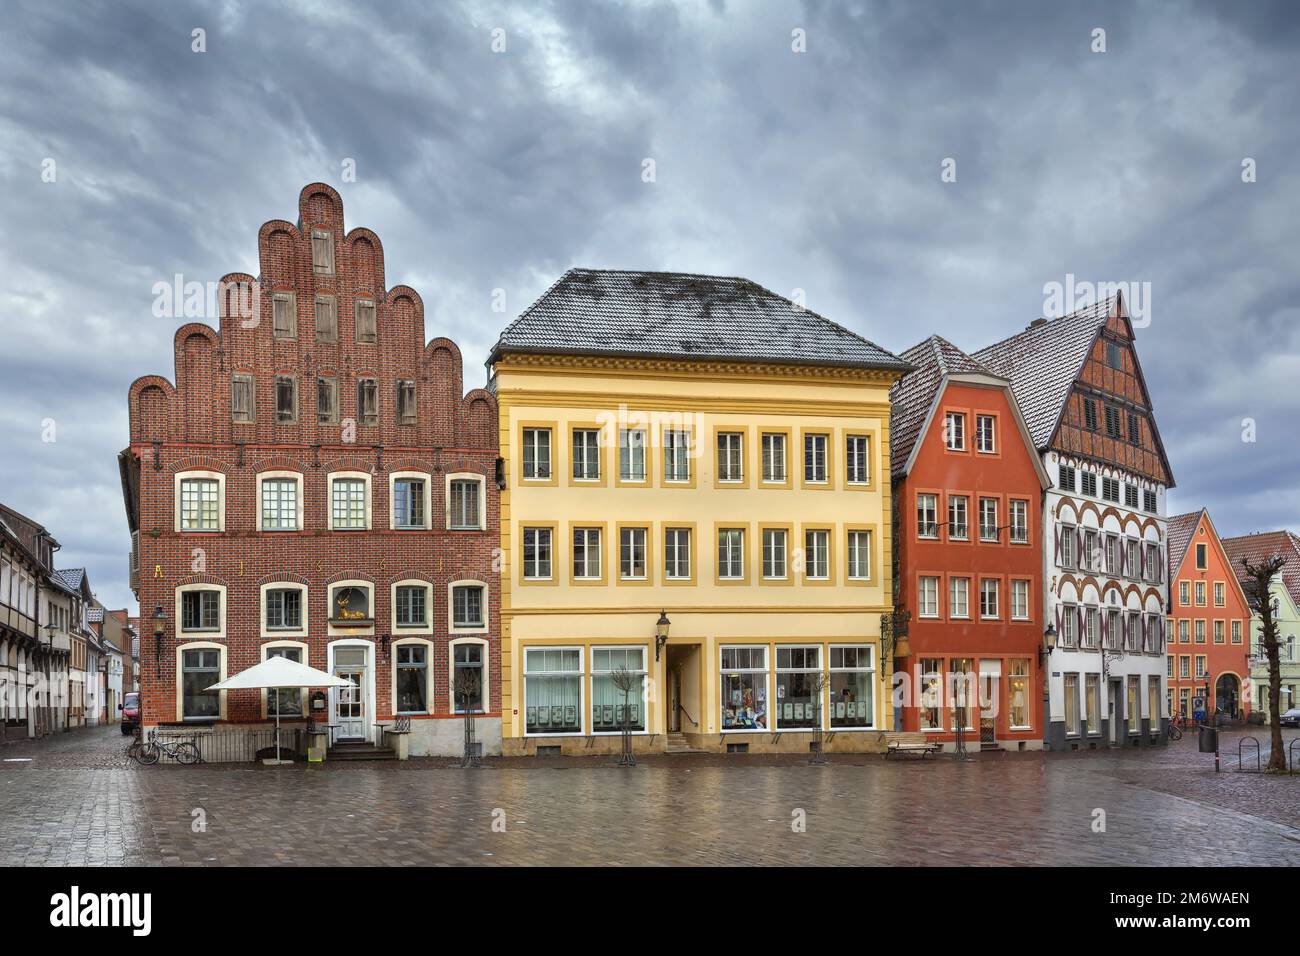 Place du marché historique, Warendorf, Allemagne Banque D'Images